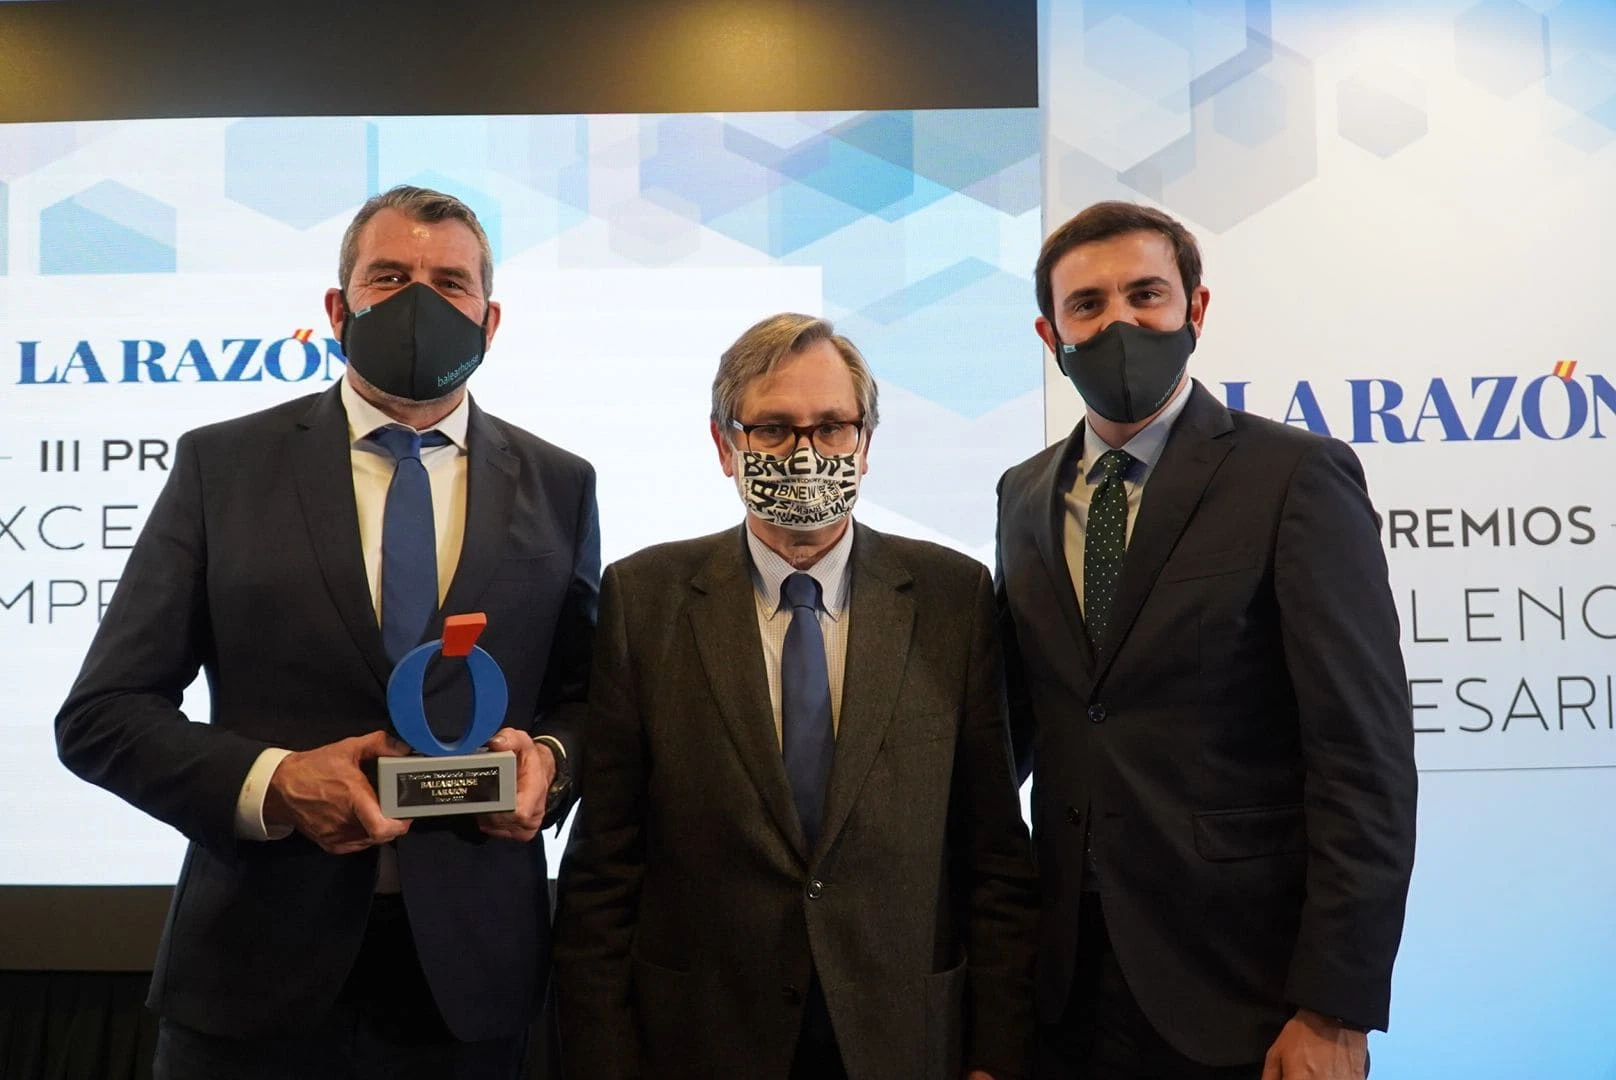 Balearhouse, premio nacional a la excelencia empresarial 2022 del diario La Razón